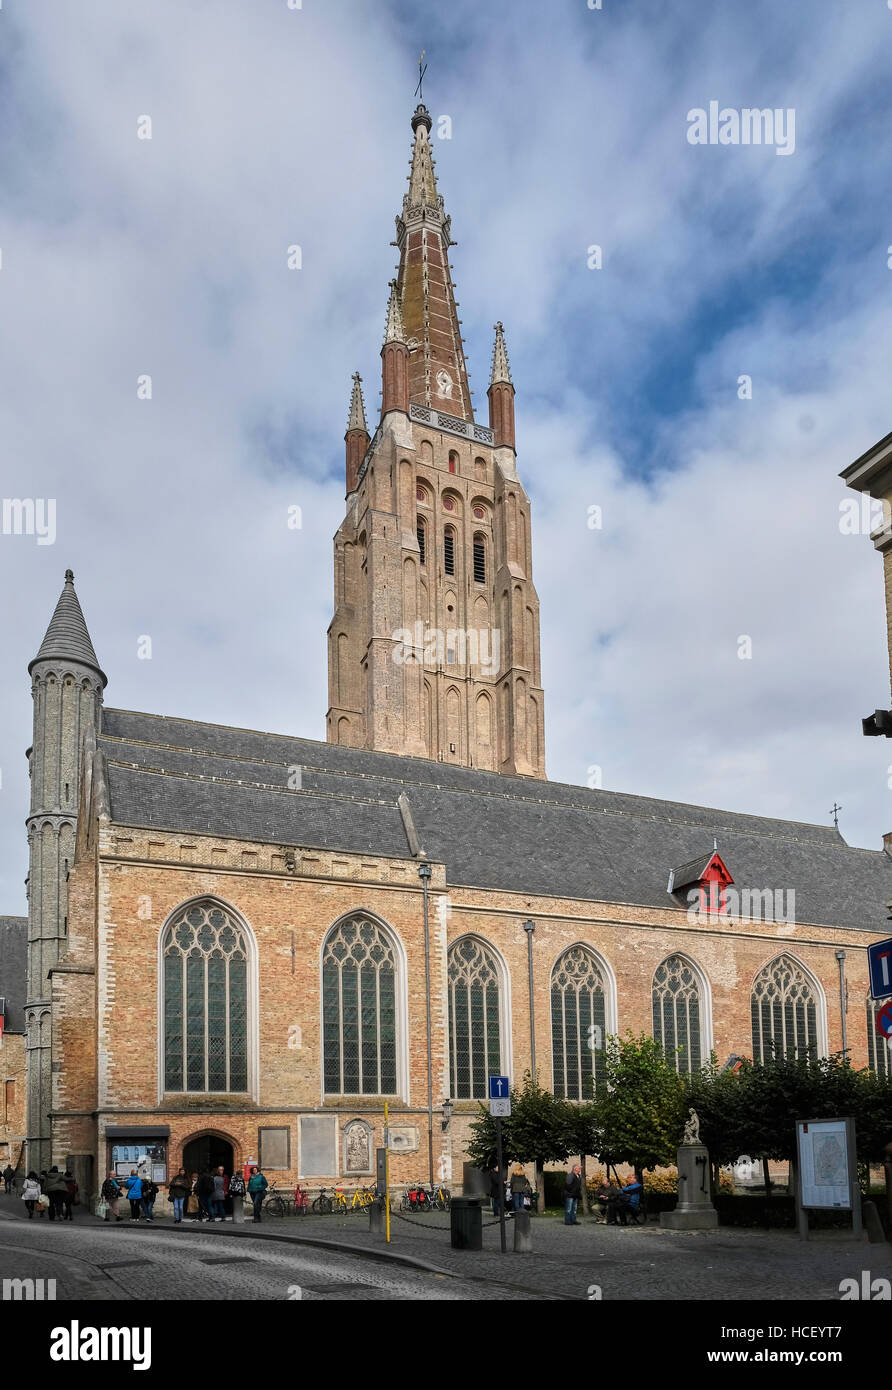 Onze-Lieve-Vrouwekerk, ou l'église Notre Dame, Bruges, Belgique. Commencé dans la première moitié du 13e siècle Banque D'Images